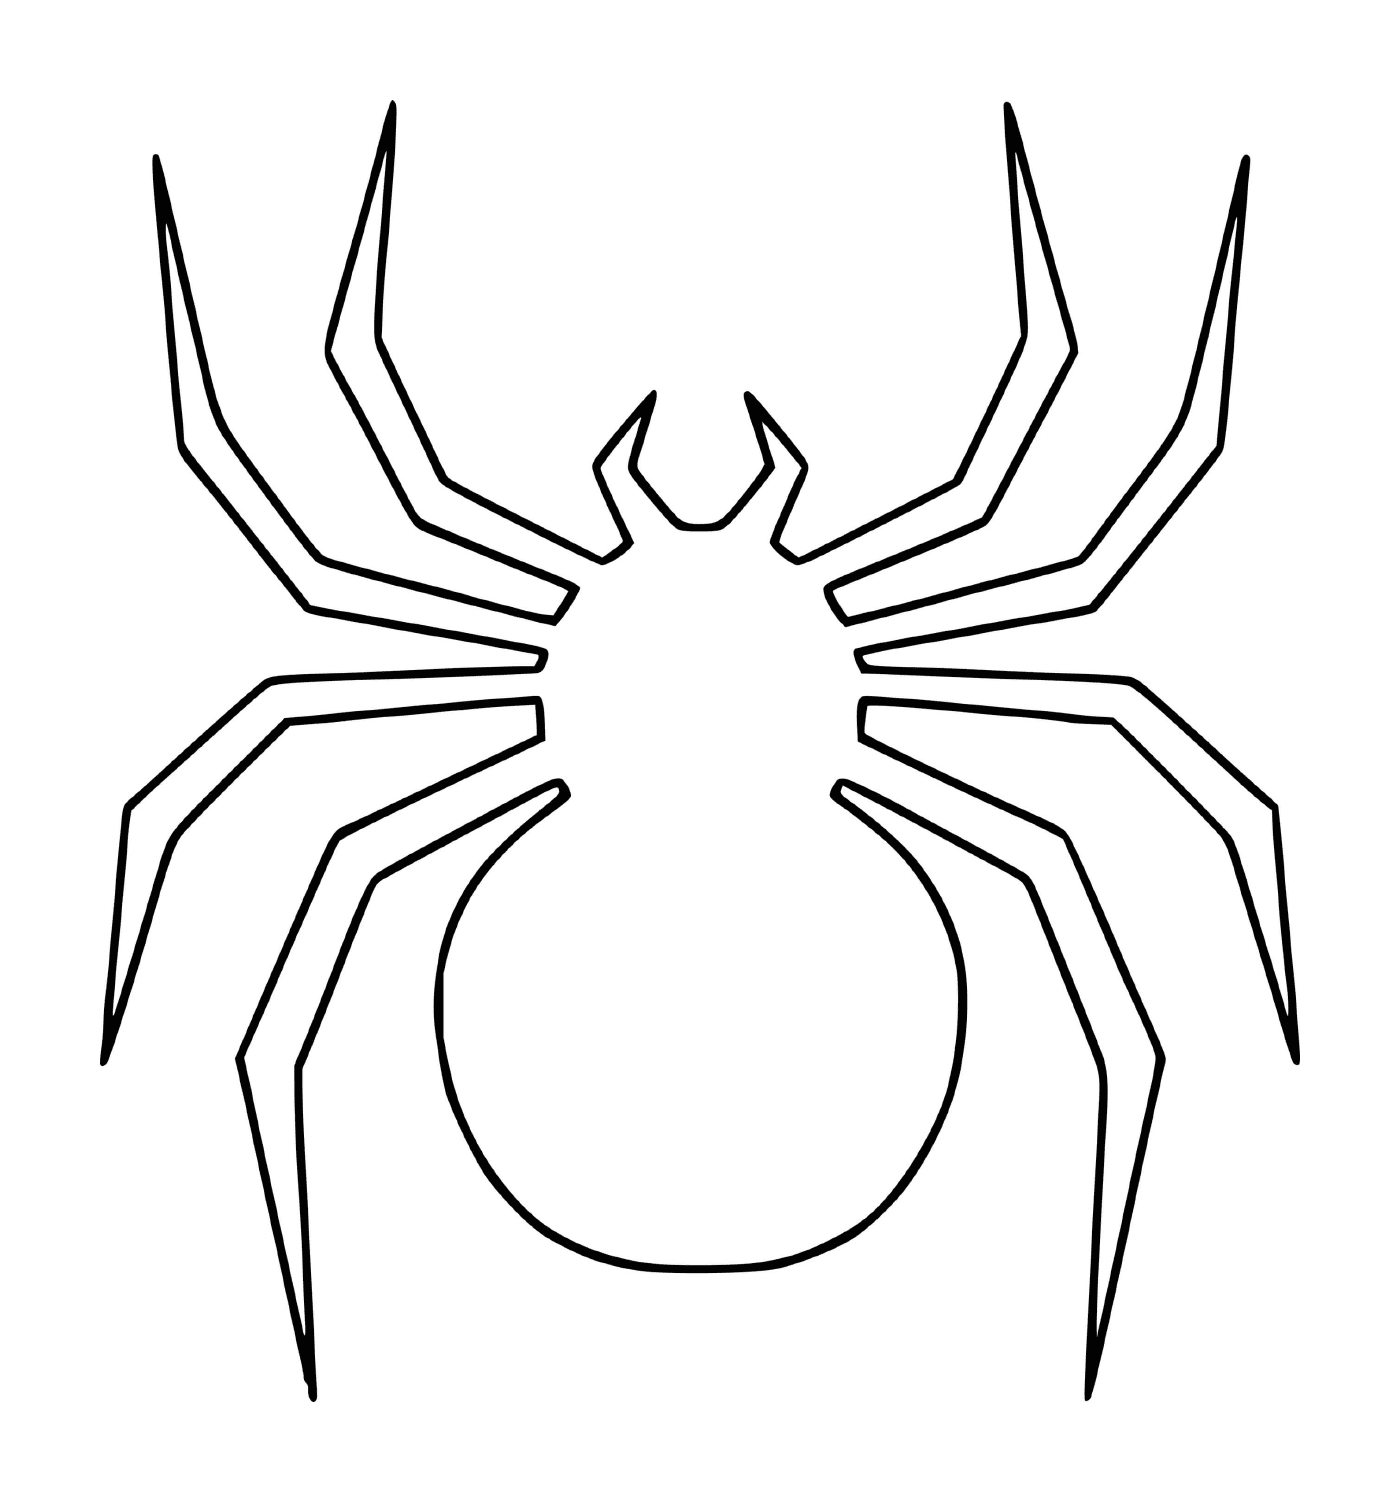  一个巨大的蜘蛛 